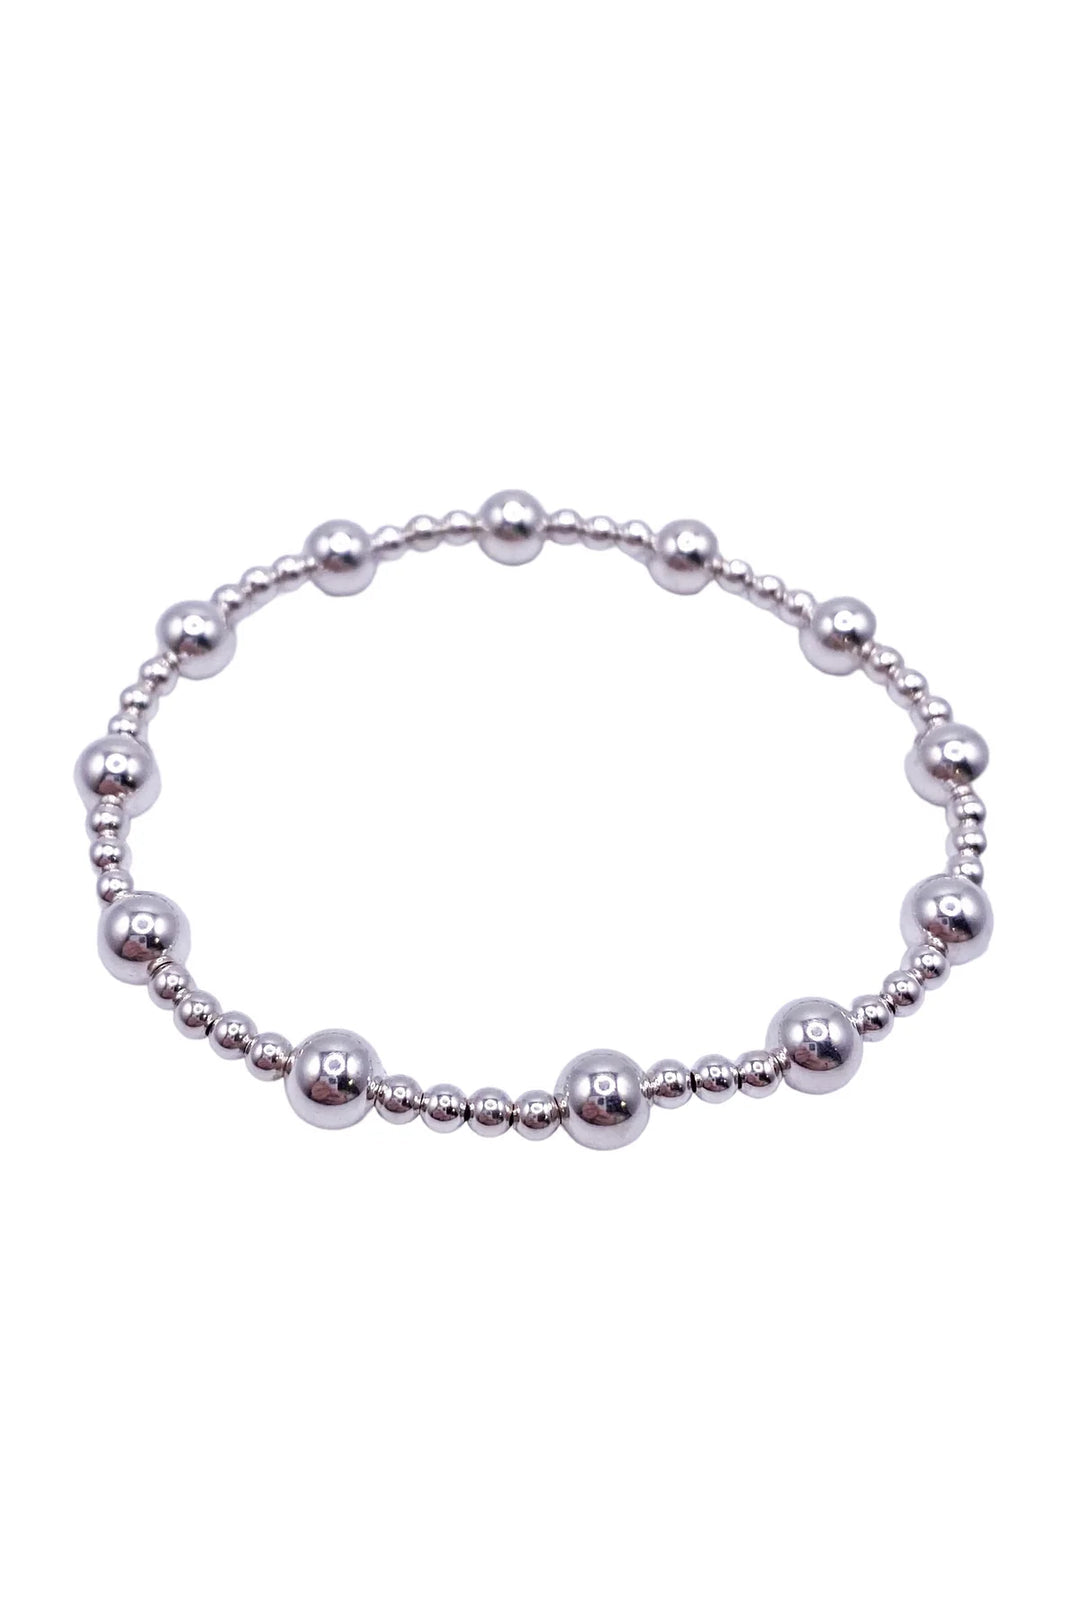 XL ENewton Extends Sterling Silver Sincerity Pattern 5mm Bead Bracelet